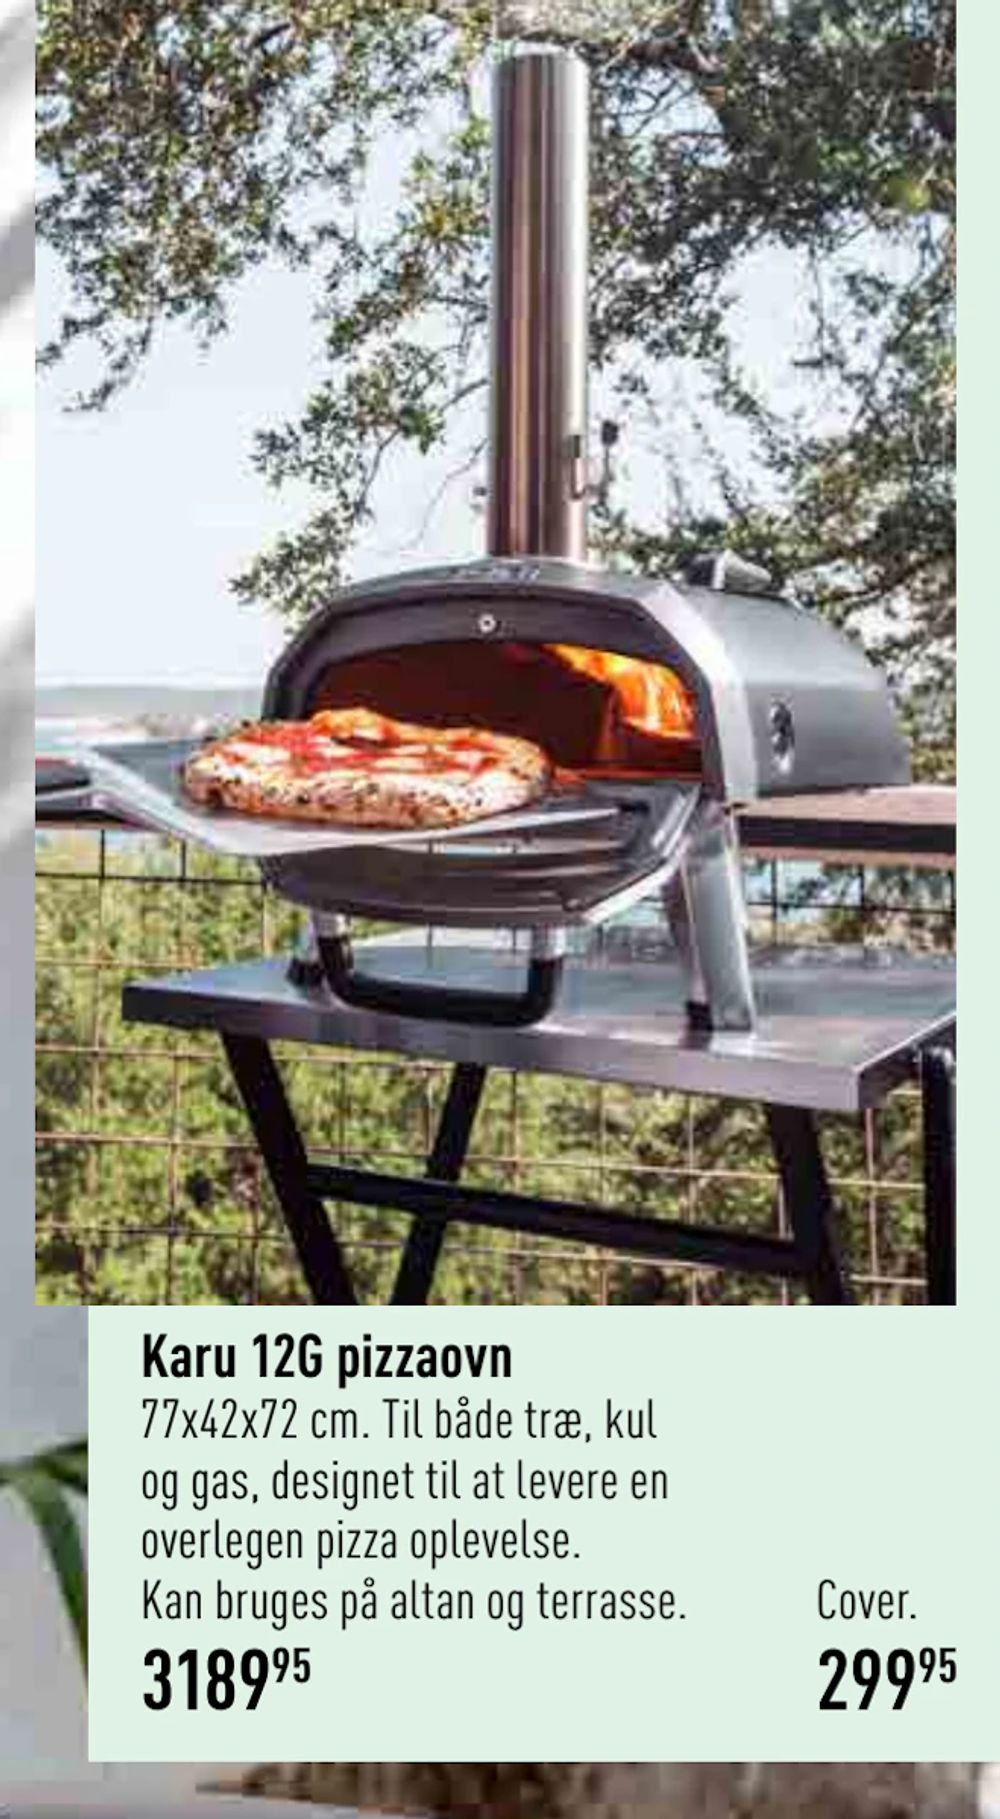 Tilbud på Karu 12G pizzaovn fra Imerco til 299,95 kr.